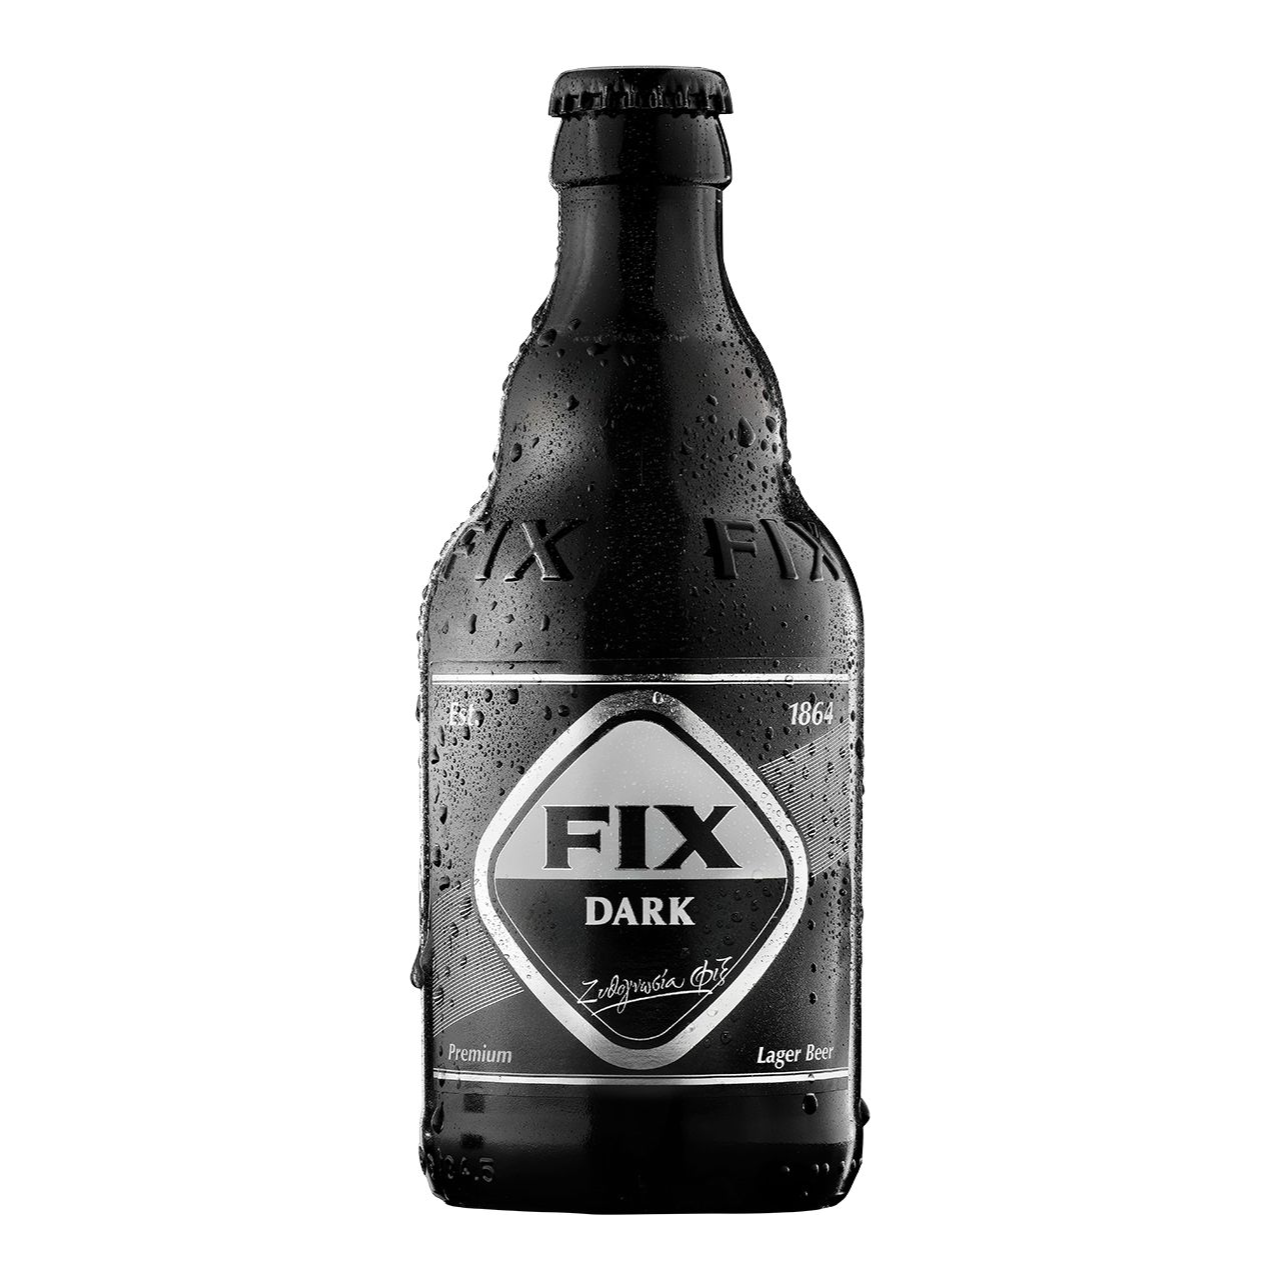 Fix Dark Larger beer